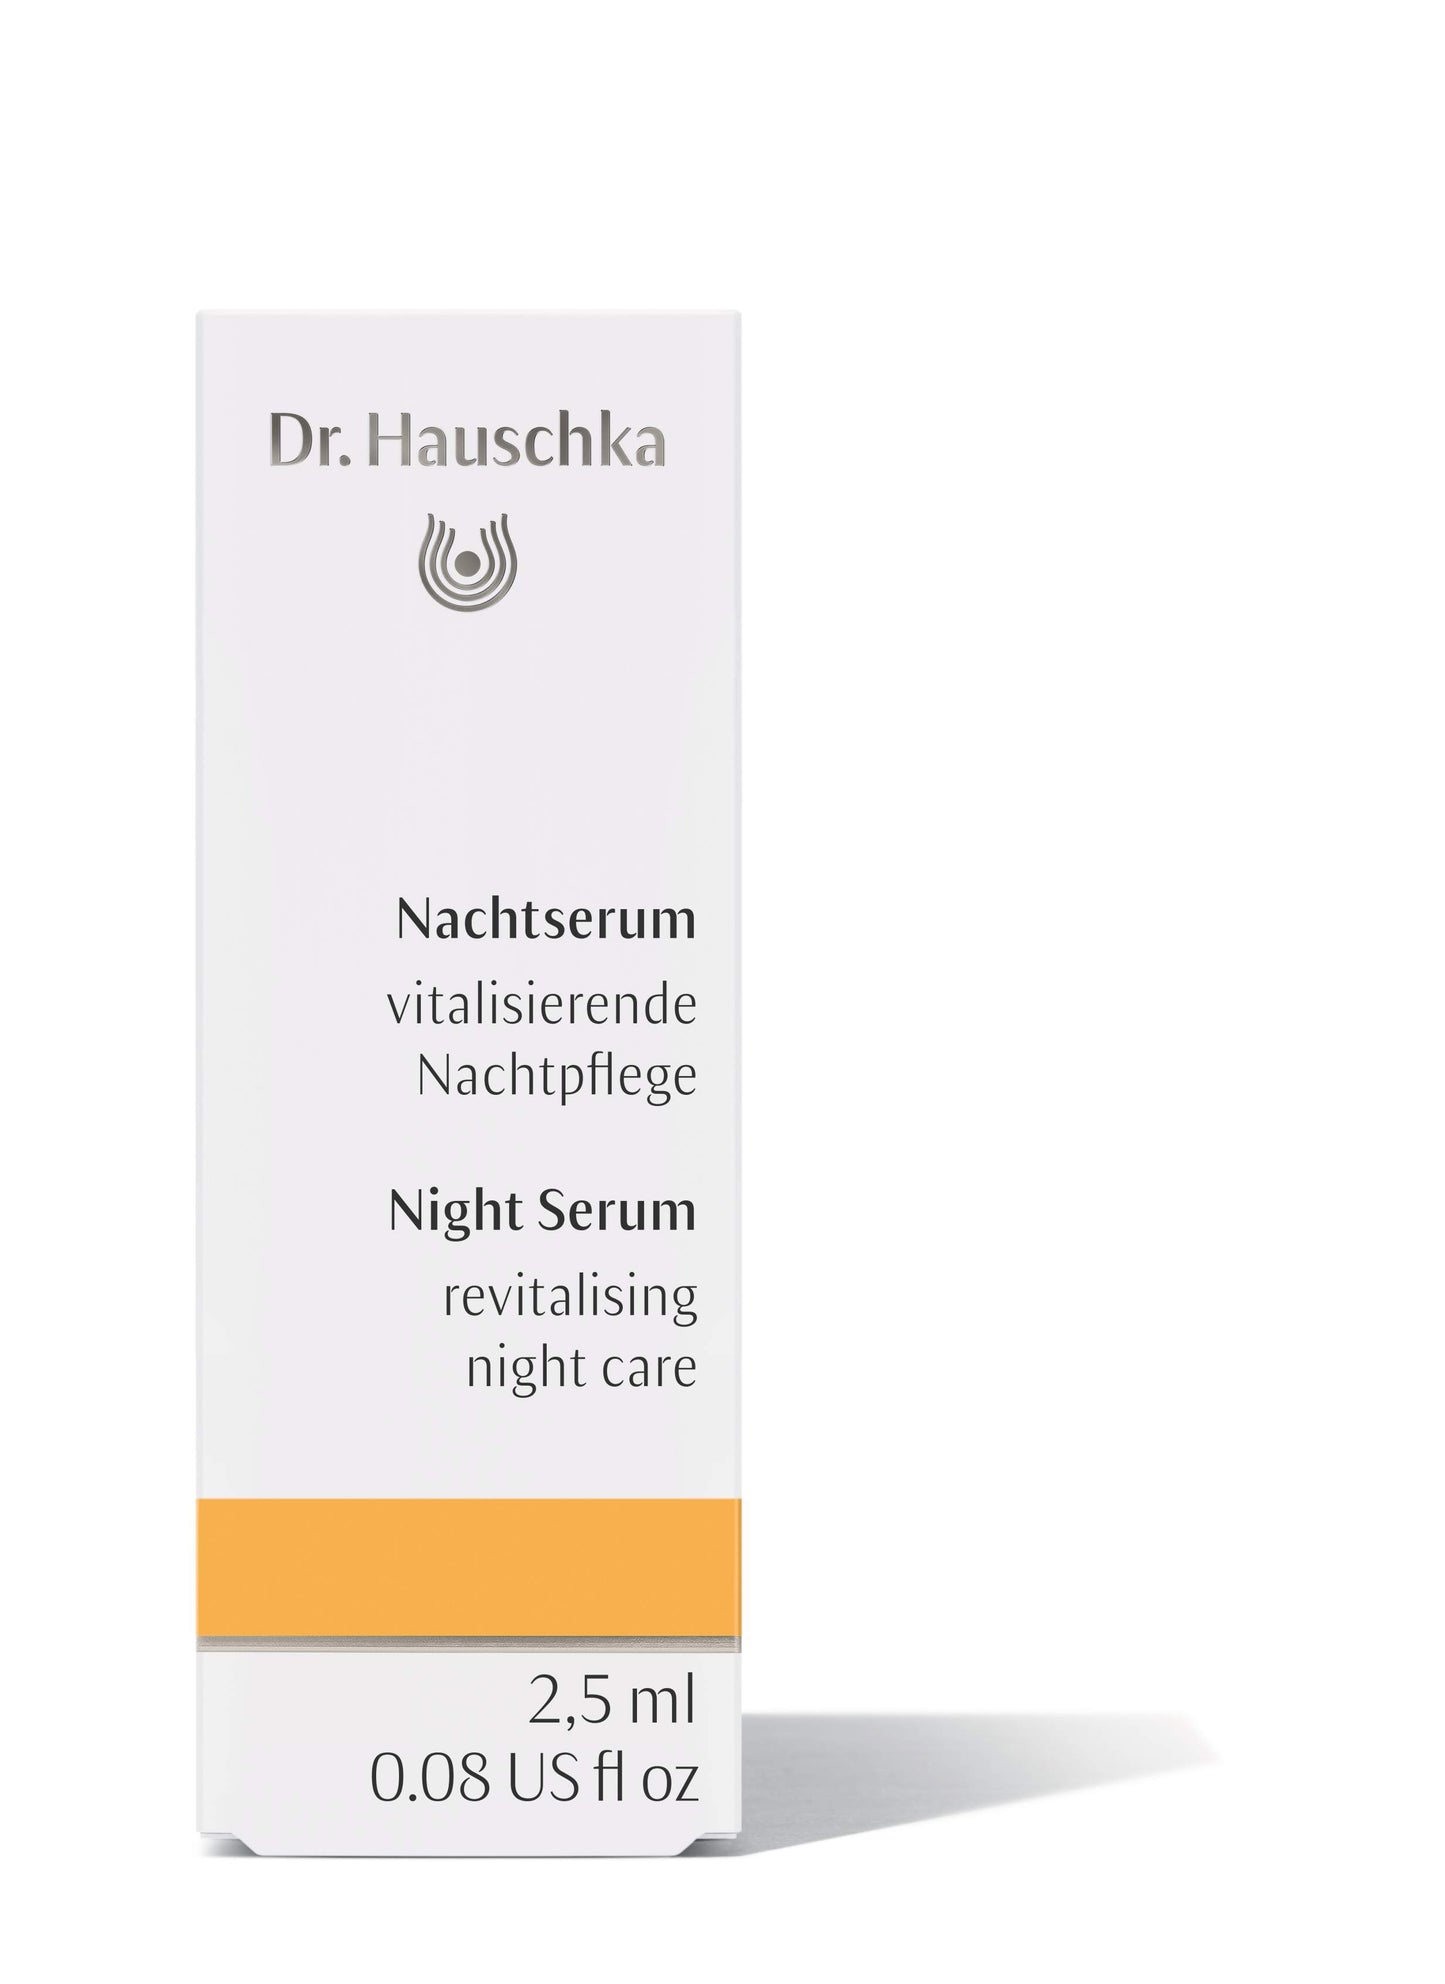 Dr. Hauschka - Nachtserum Probierpackung - 2,5 ml